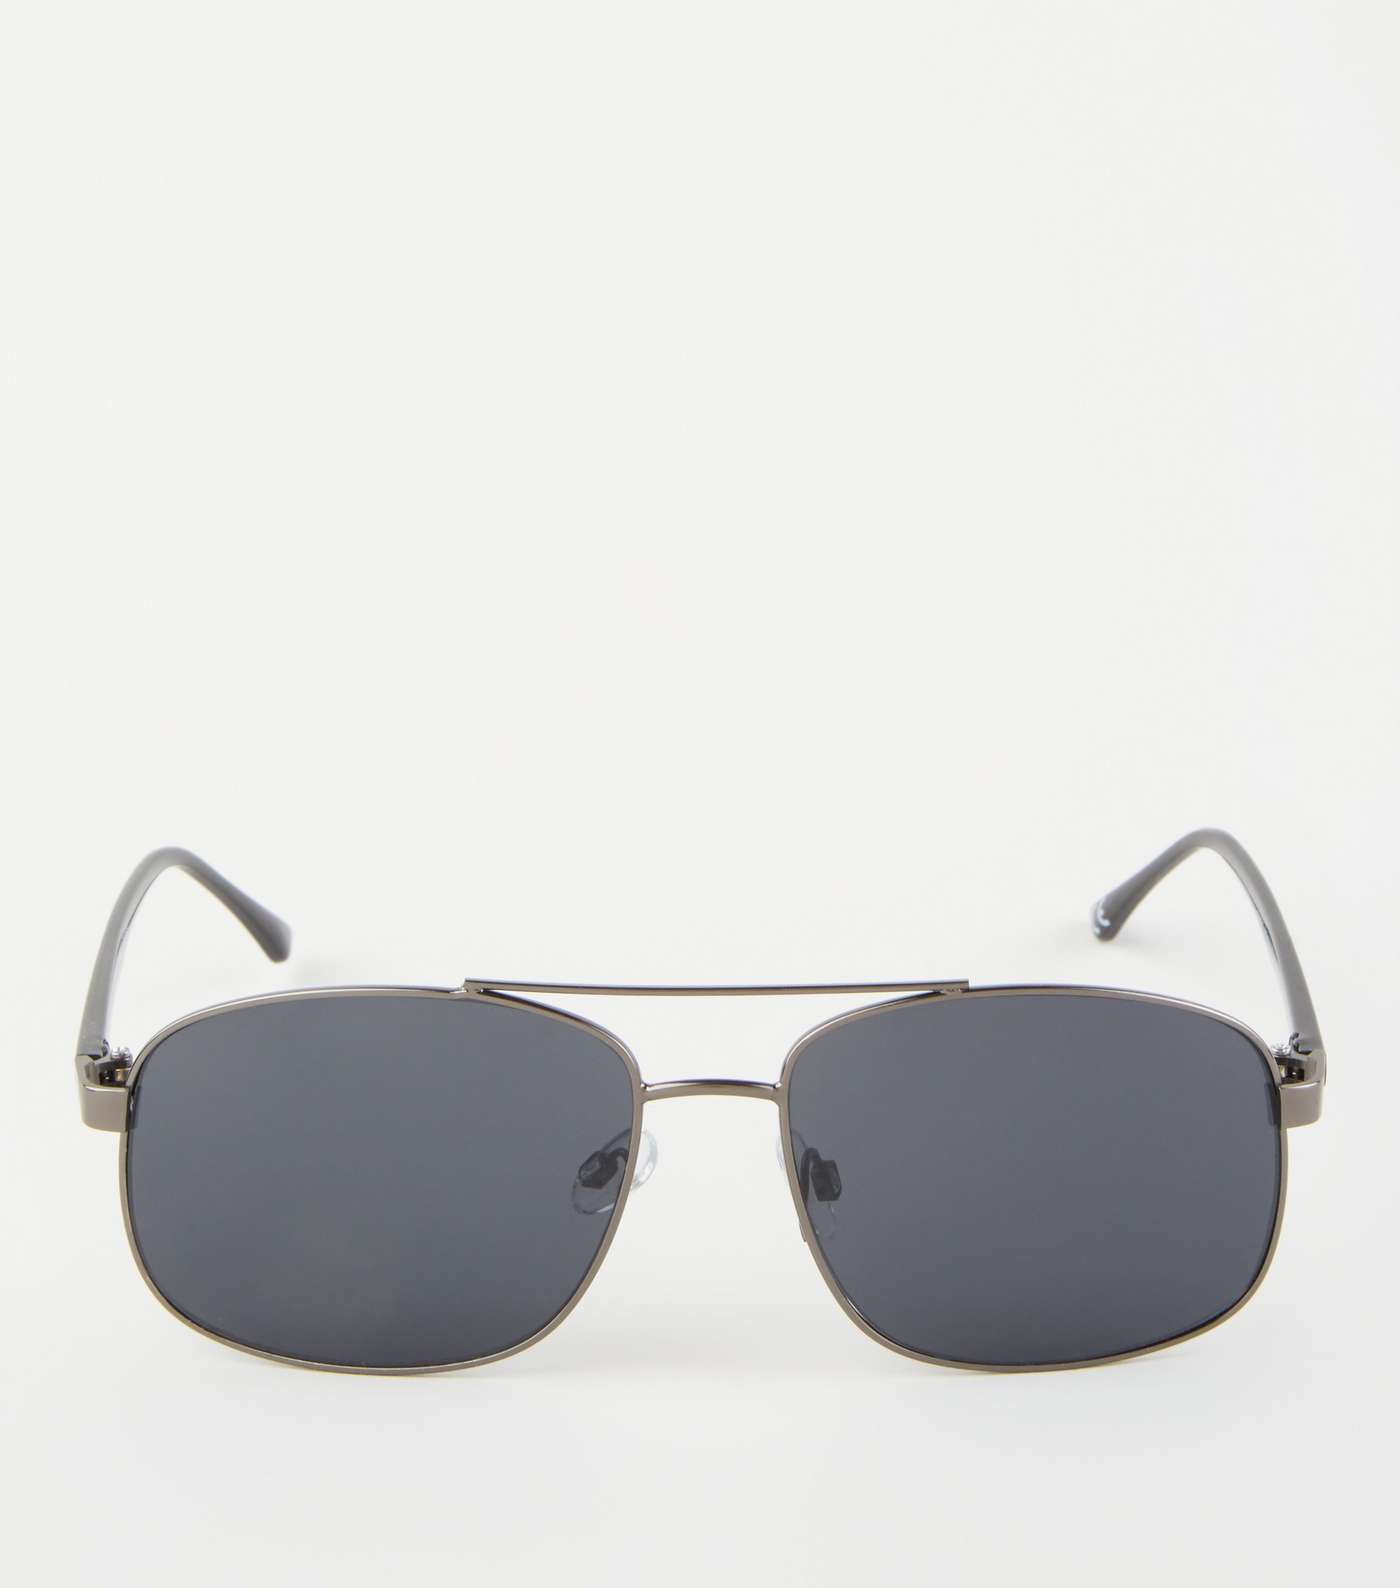 Black Square Frame Pilot Sunglasses Image 3